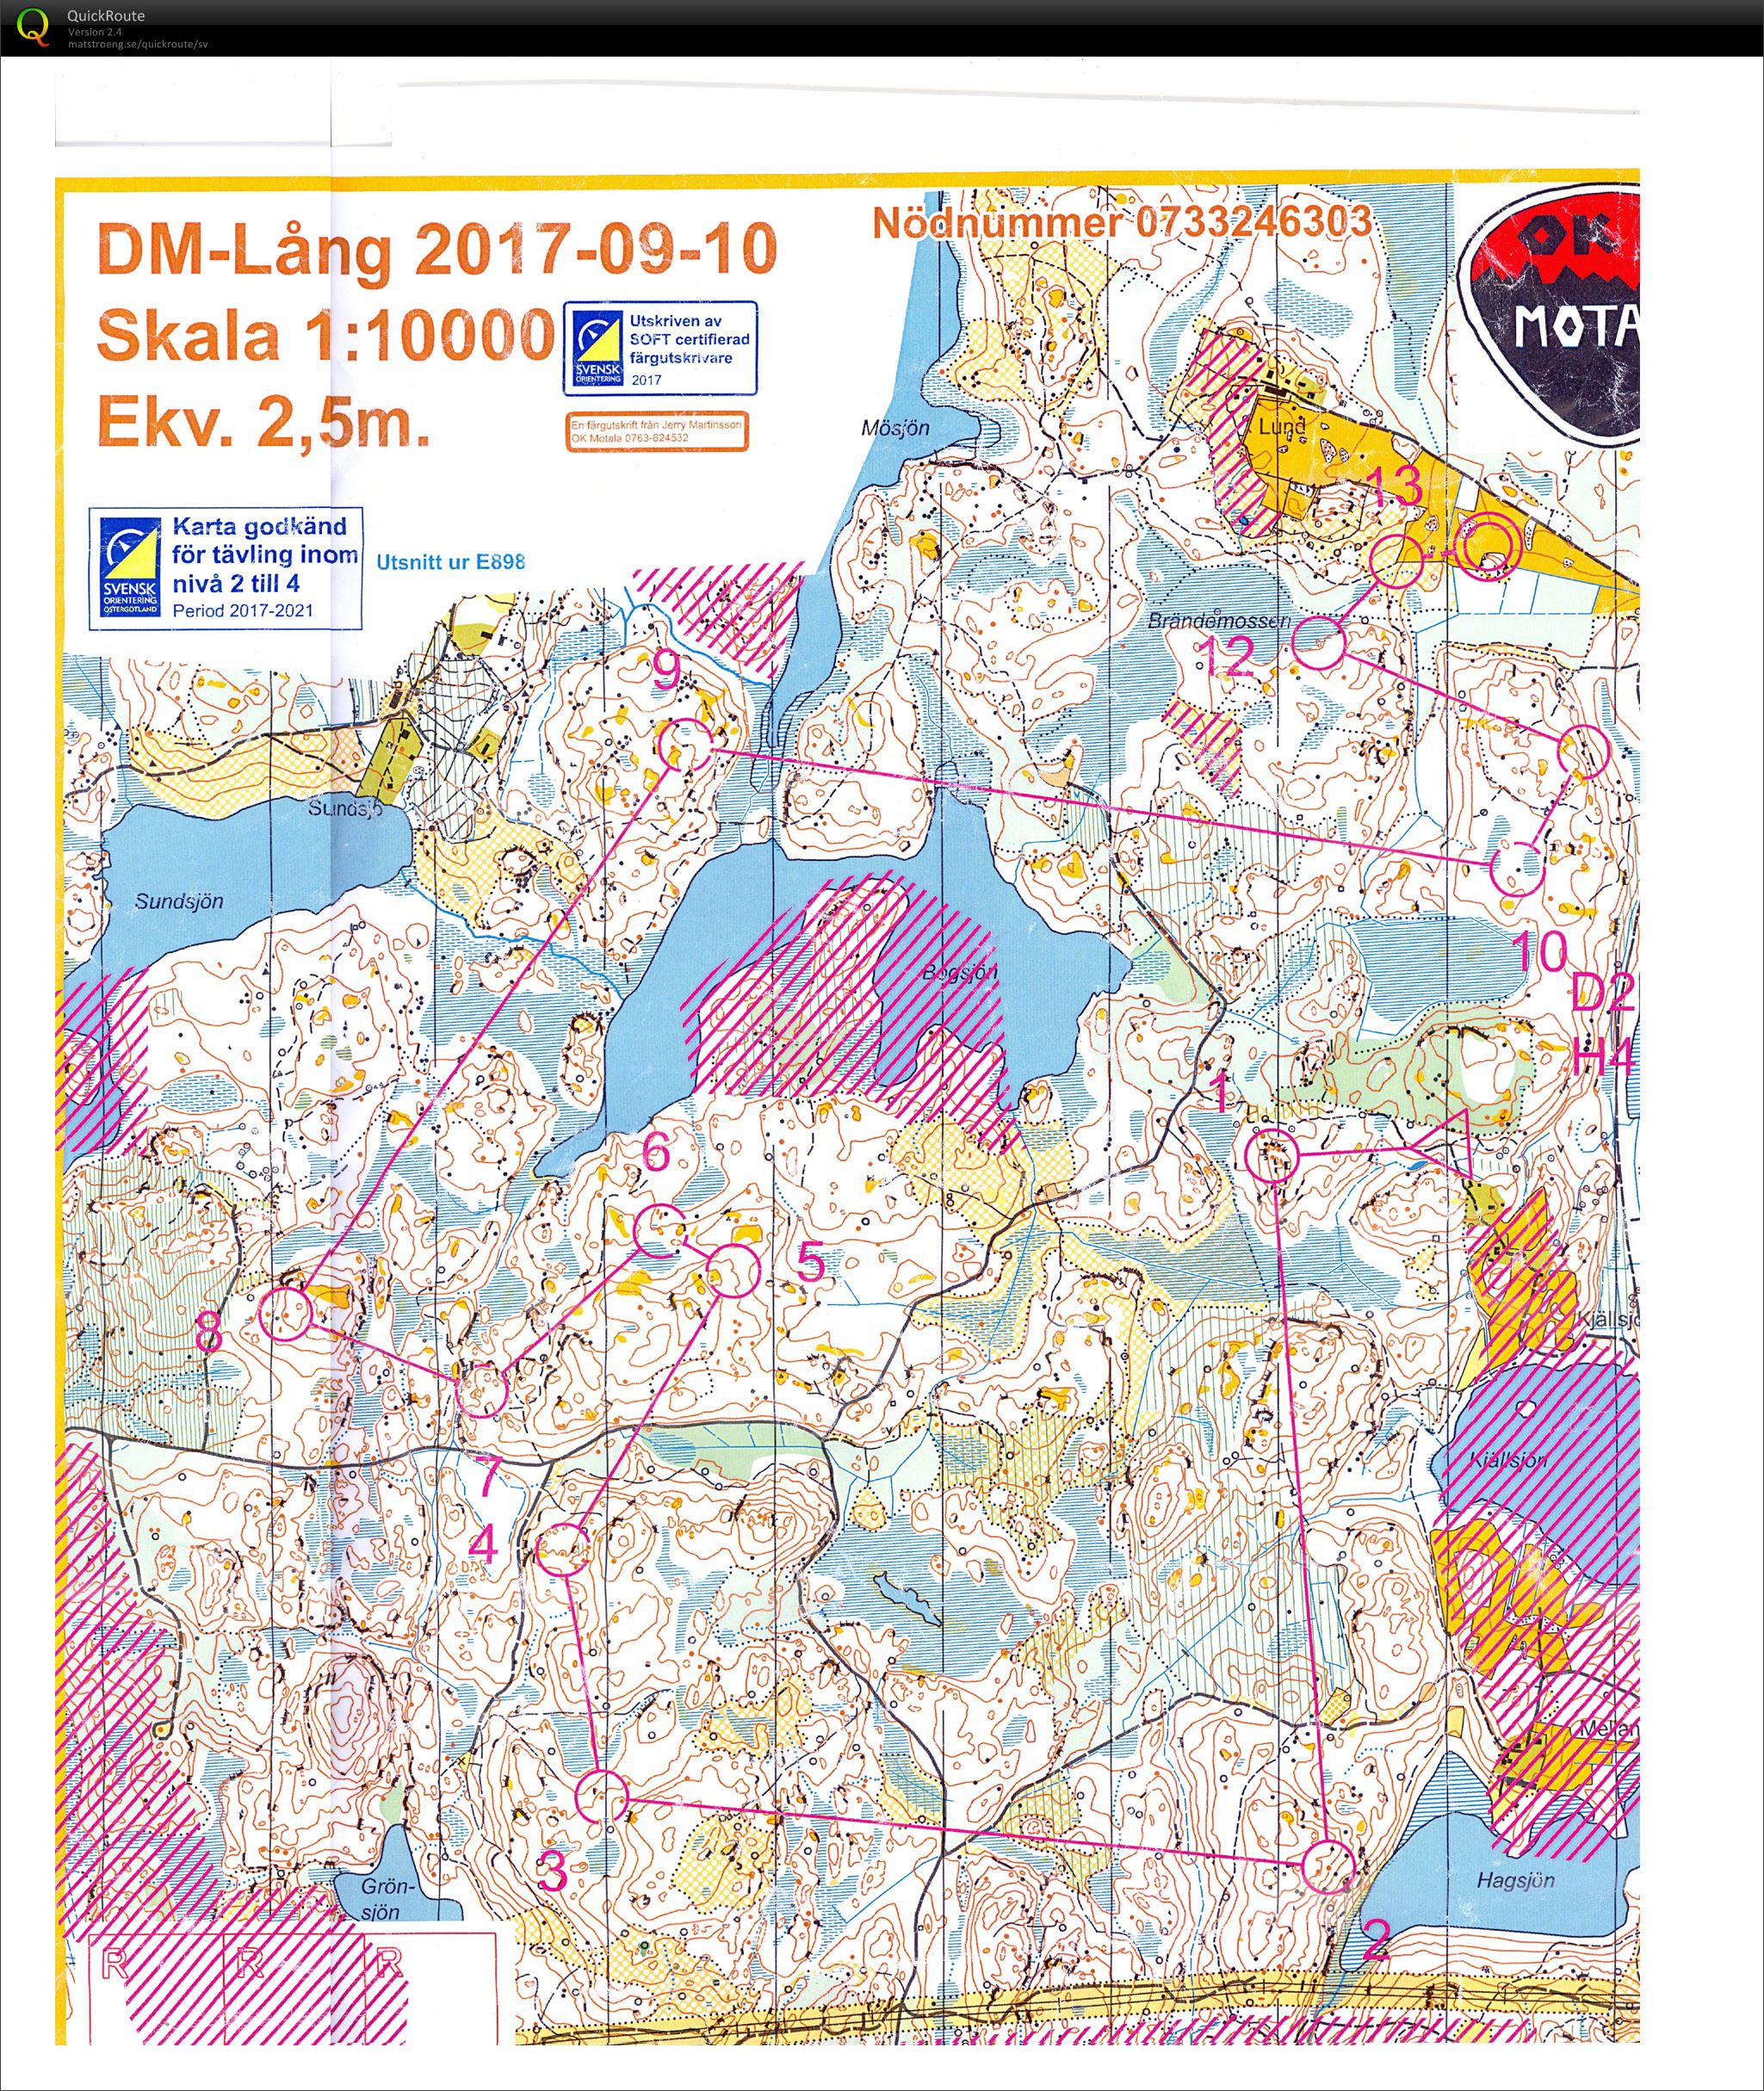 DM-Lång Östergötland (2017-09-10)